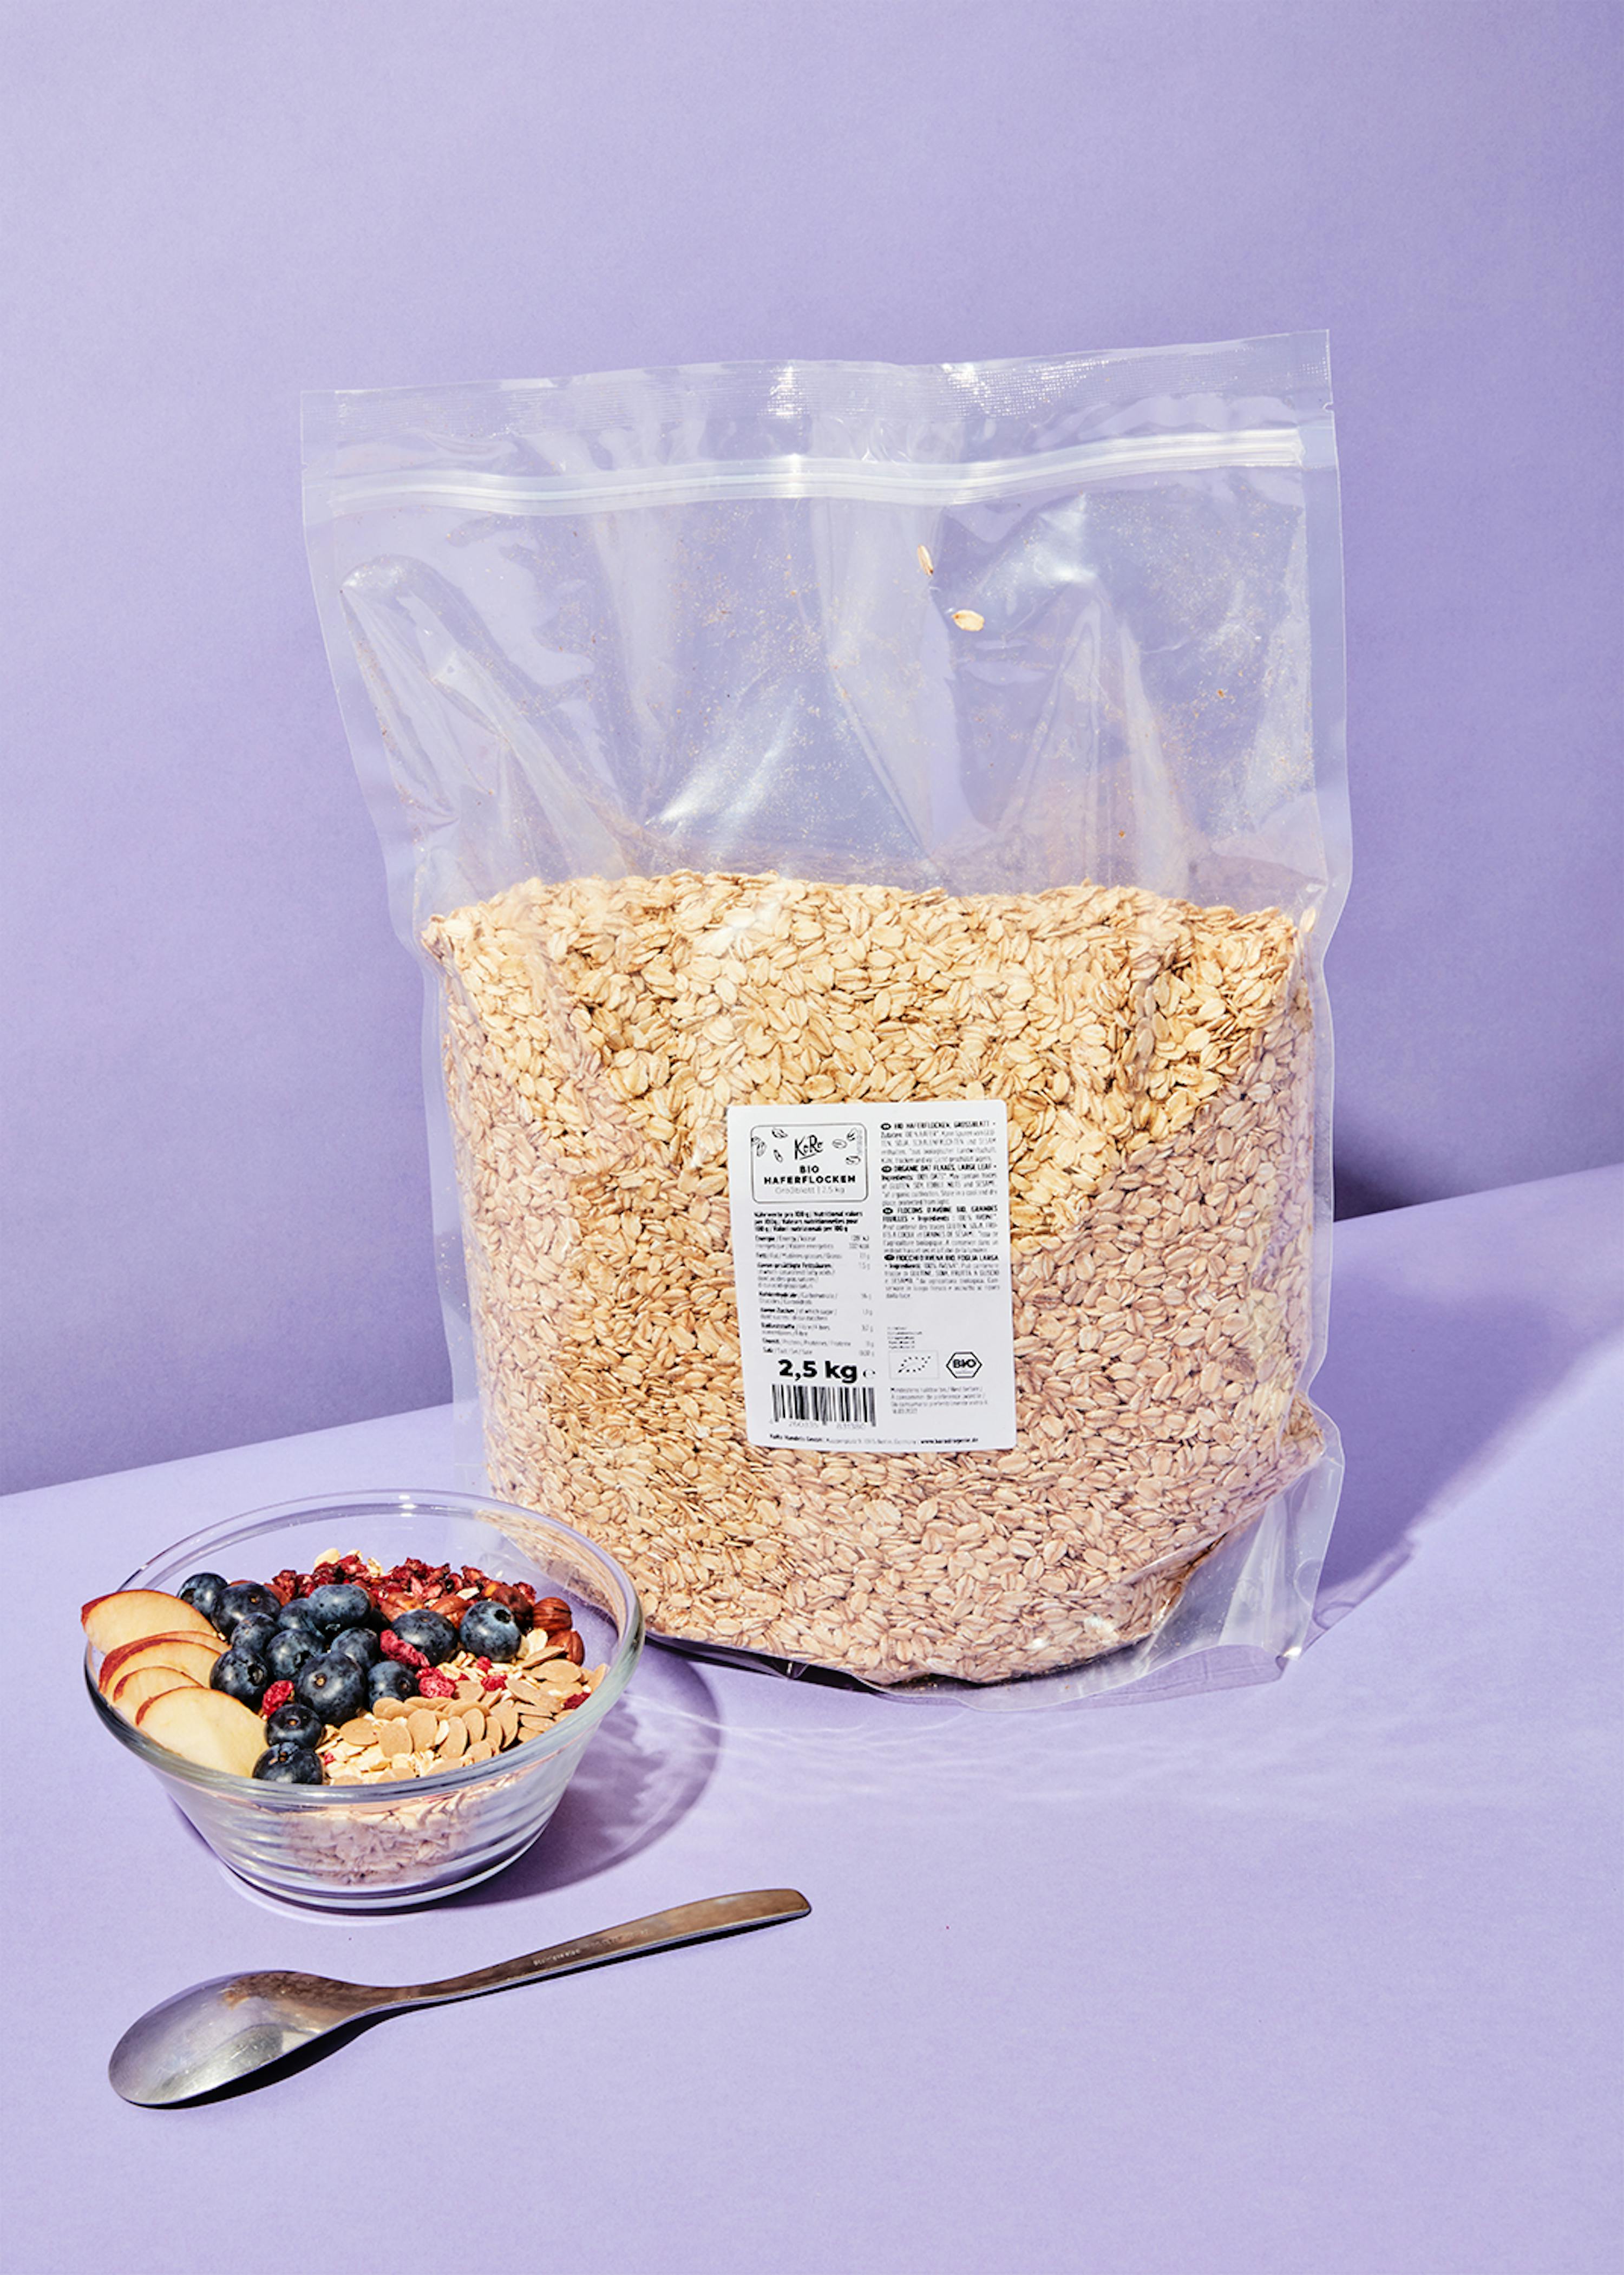 Fiocchi d'avena (oats) - 1 kg